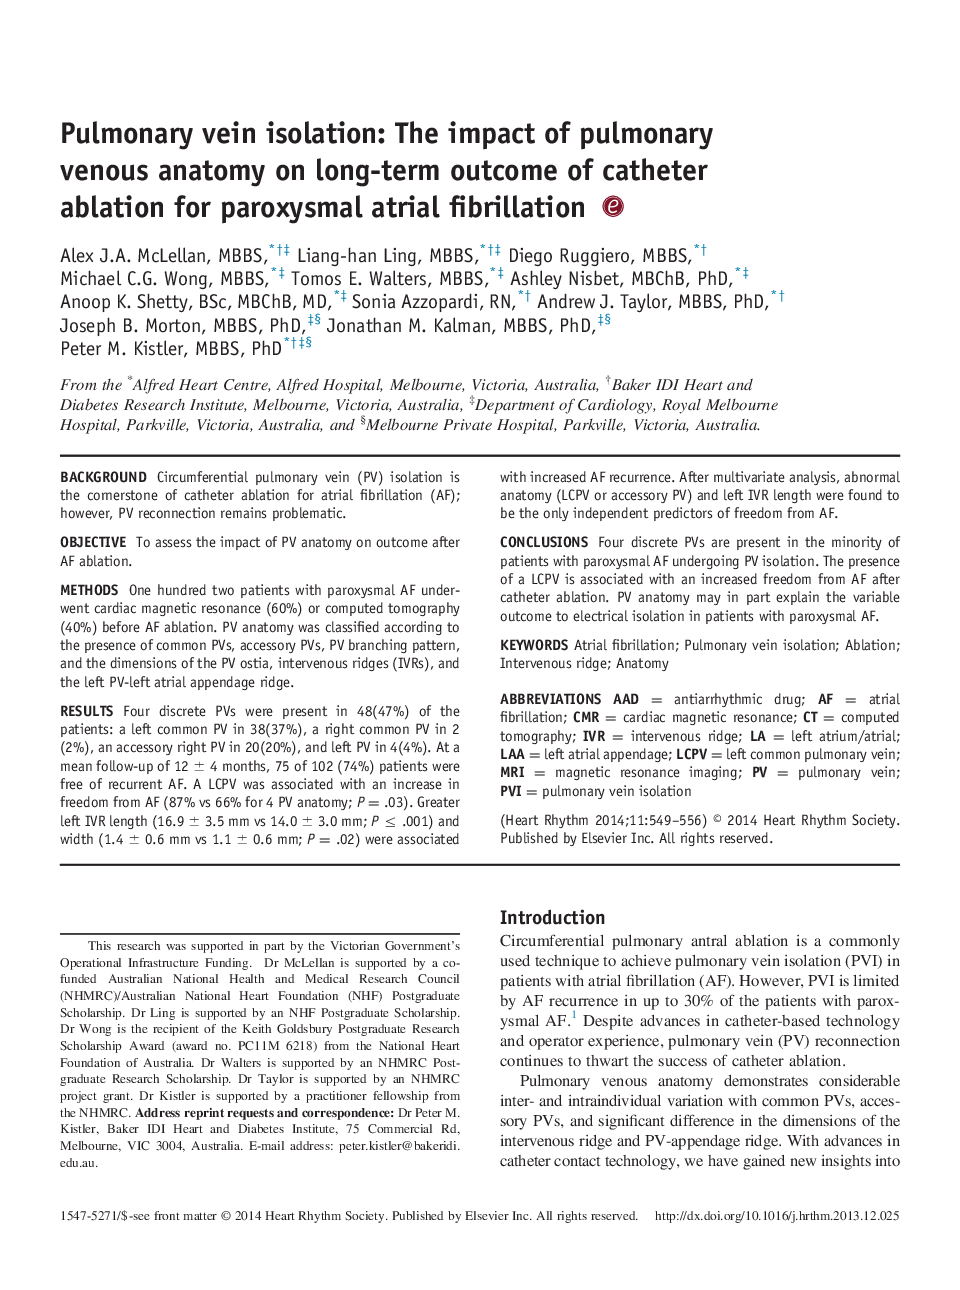 جداسازی ورید ریوی: تاثیر آناتومی وریدی ریوی بر نتایج بلند مدت تخلیه کاتتر برای فیبریلاسیون دهلیزی پاروکسیسمال 